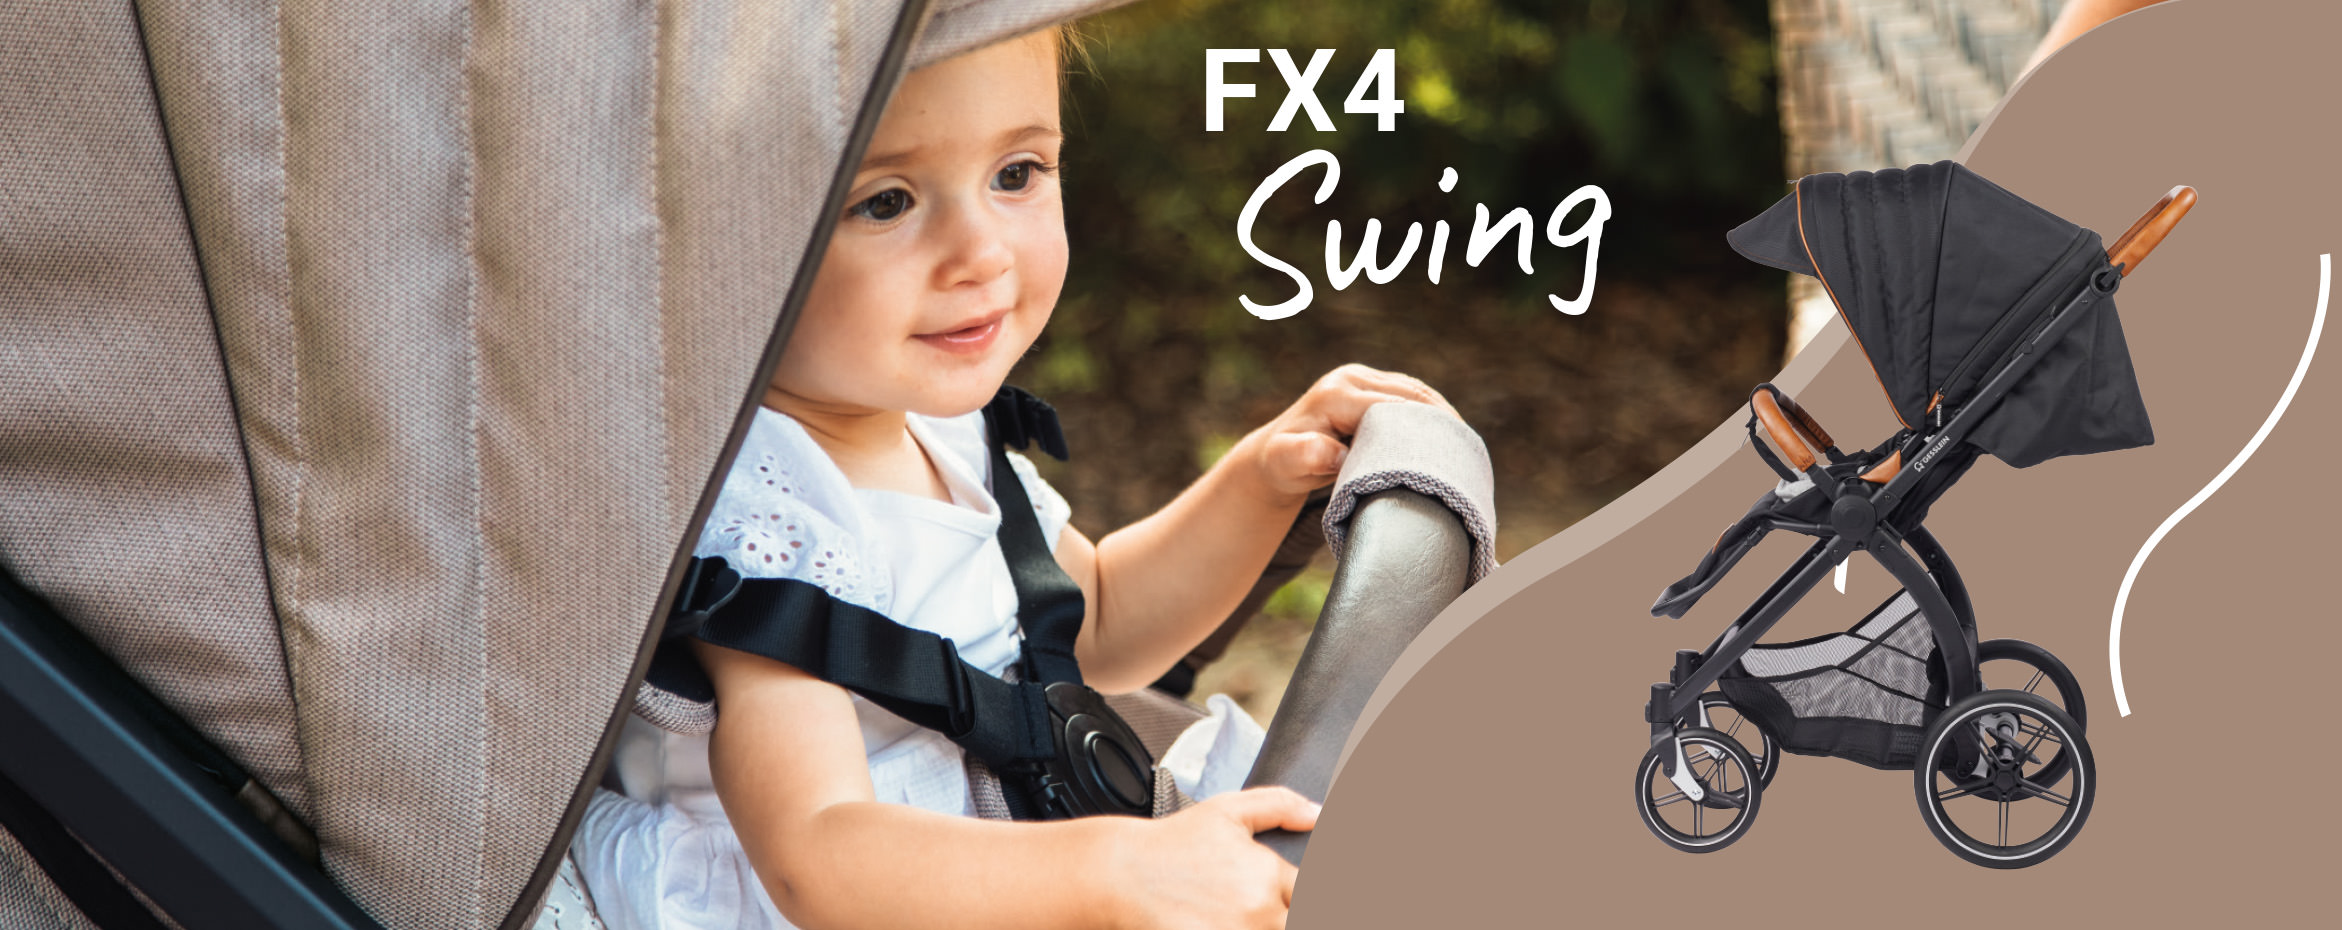 FX4 Swing